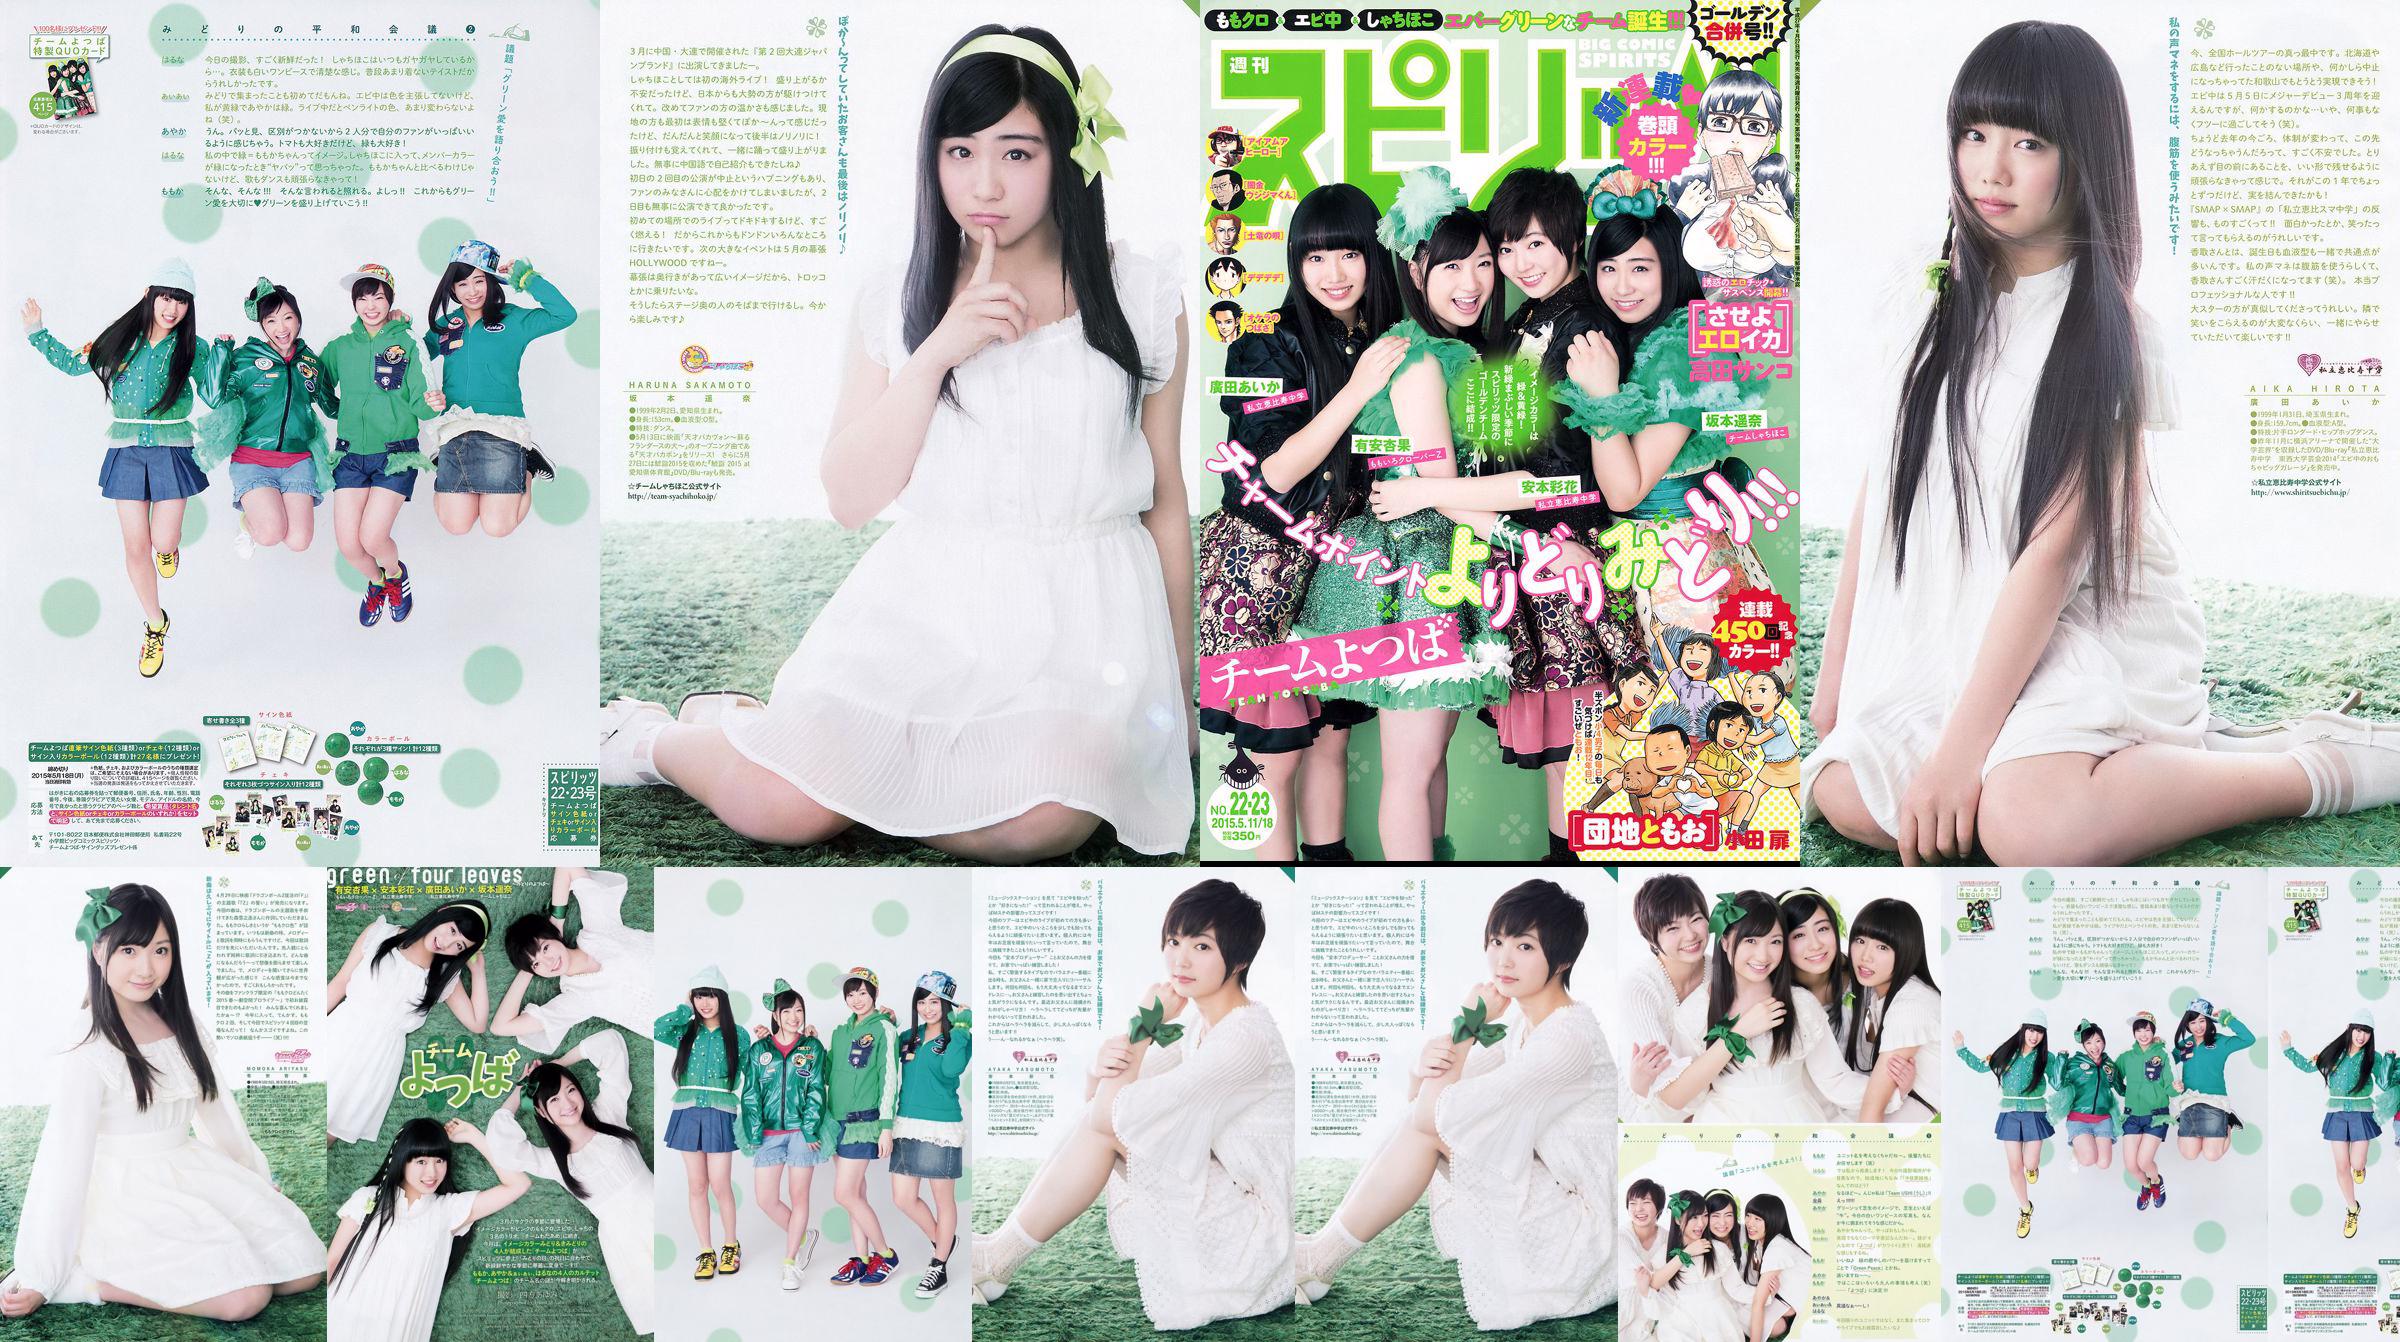 [Weekly Big Comic Spirits] Ayaka Ayana Ayana Sakamoto Haruna Hirota 2015 No.22-23 Photo Magazine No.d0395e Page 1